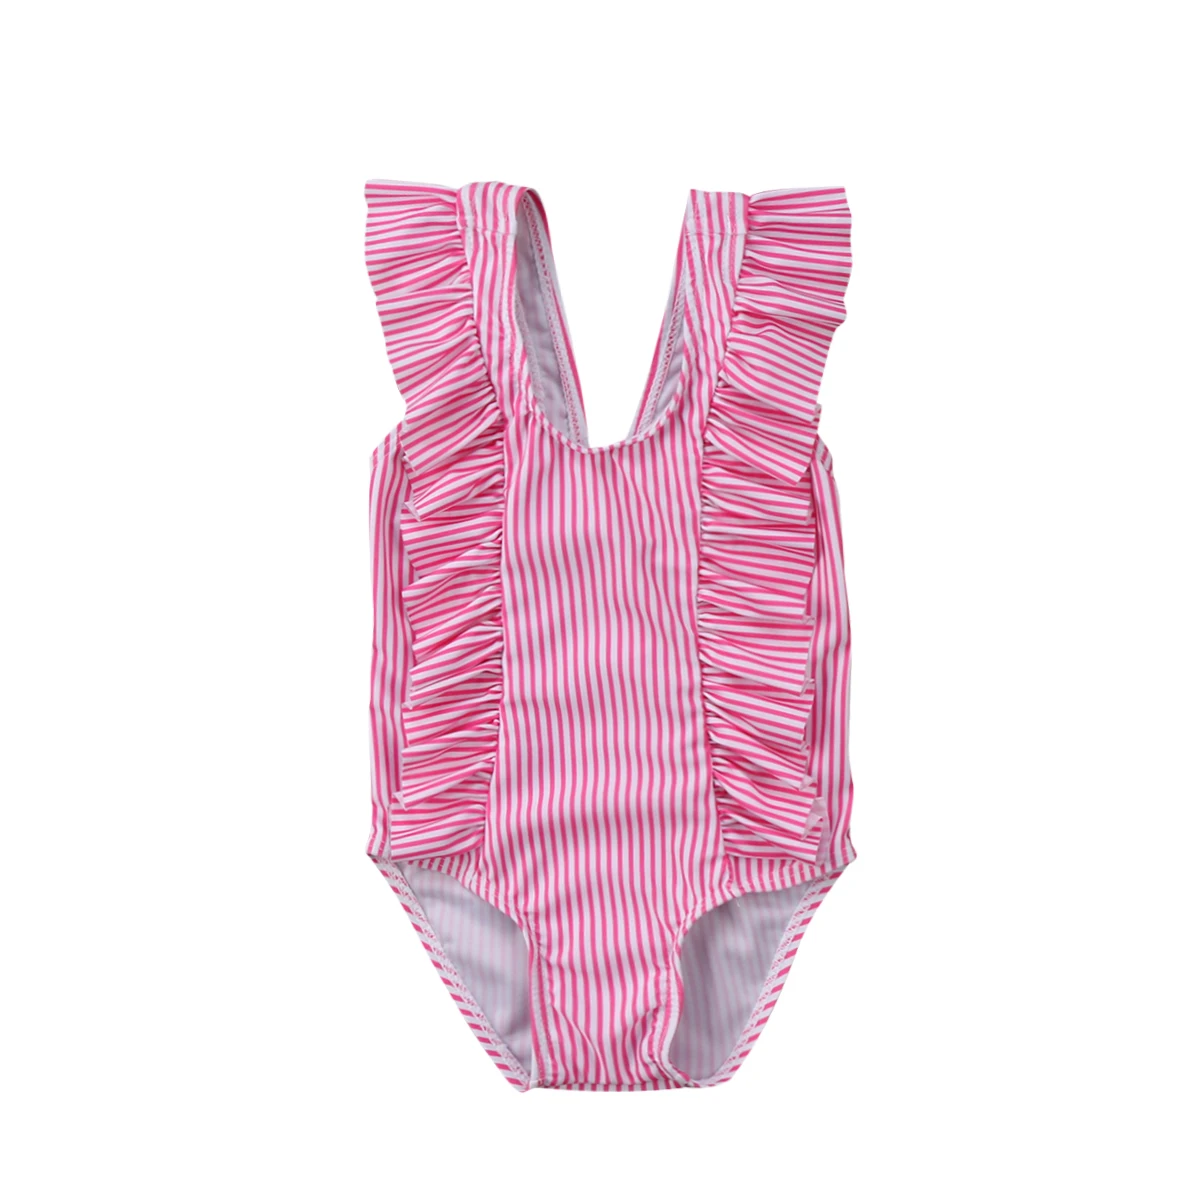 Детский купальный костюм для девочек Купальник-бикини, полосатый купальный костюм с оборками пляжный костюм для новорожденных - Цвет: Розовый